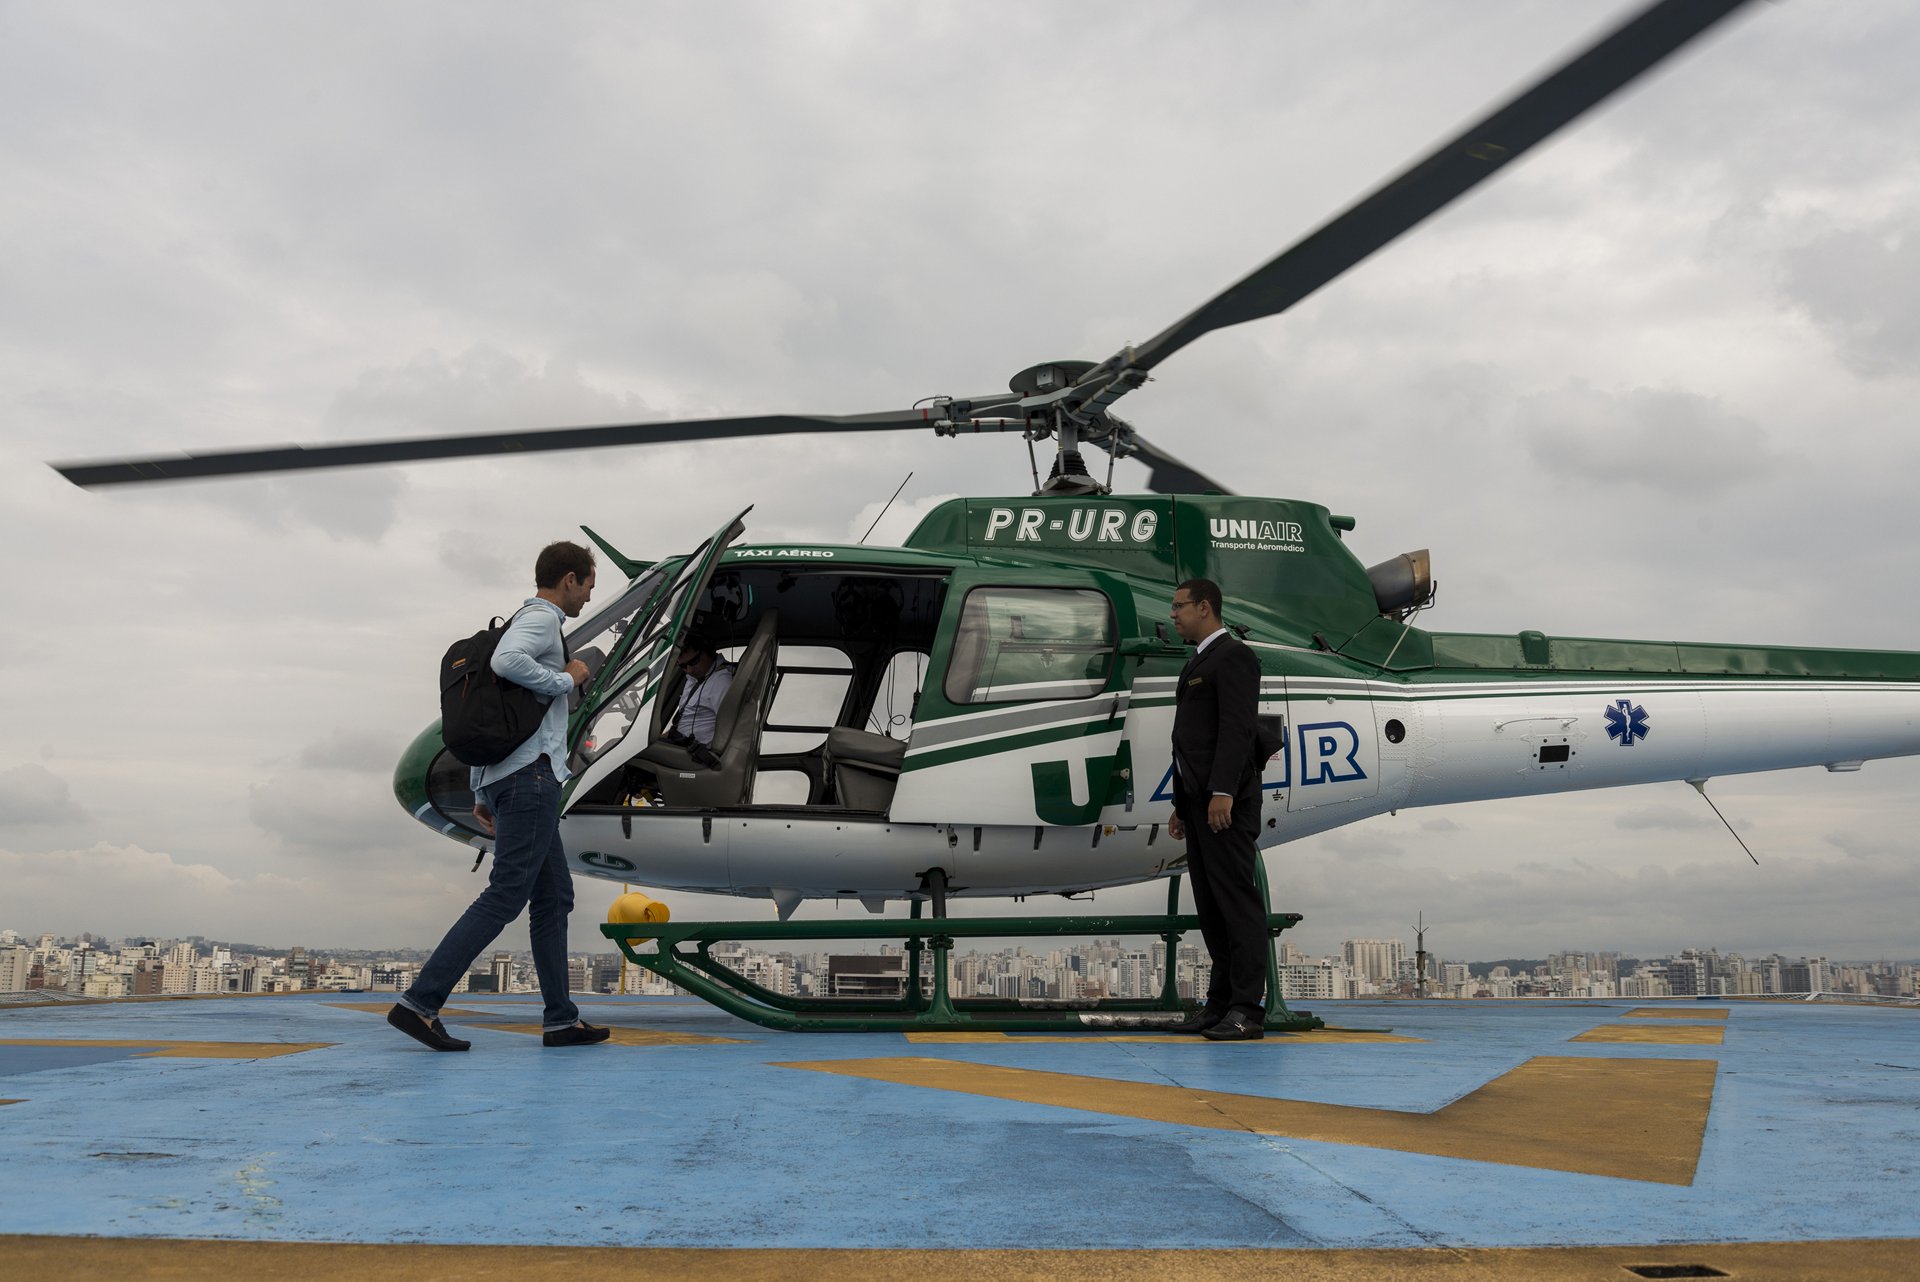 Helicópteros, otra opción de transporte en la CDMX